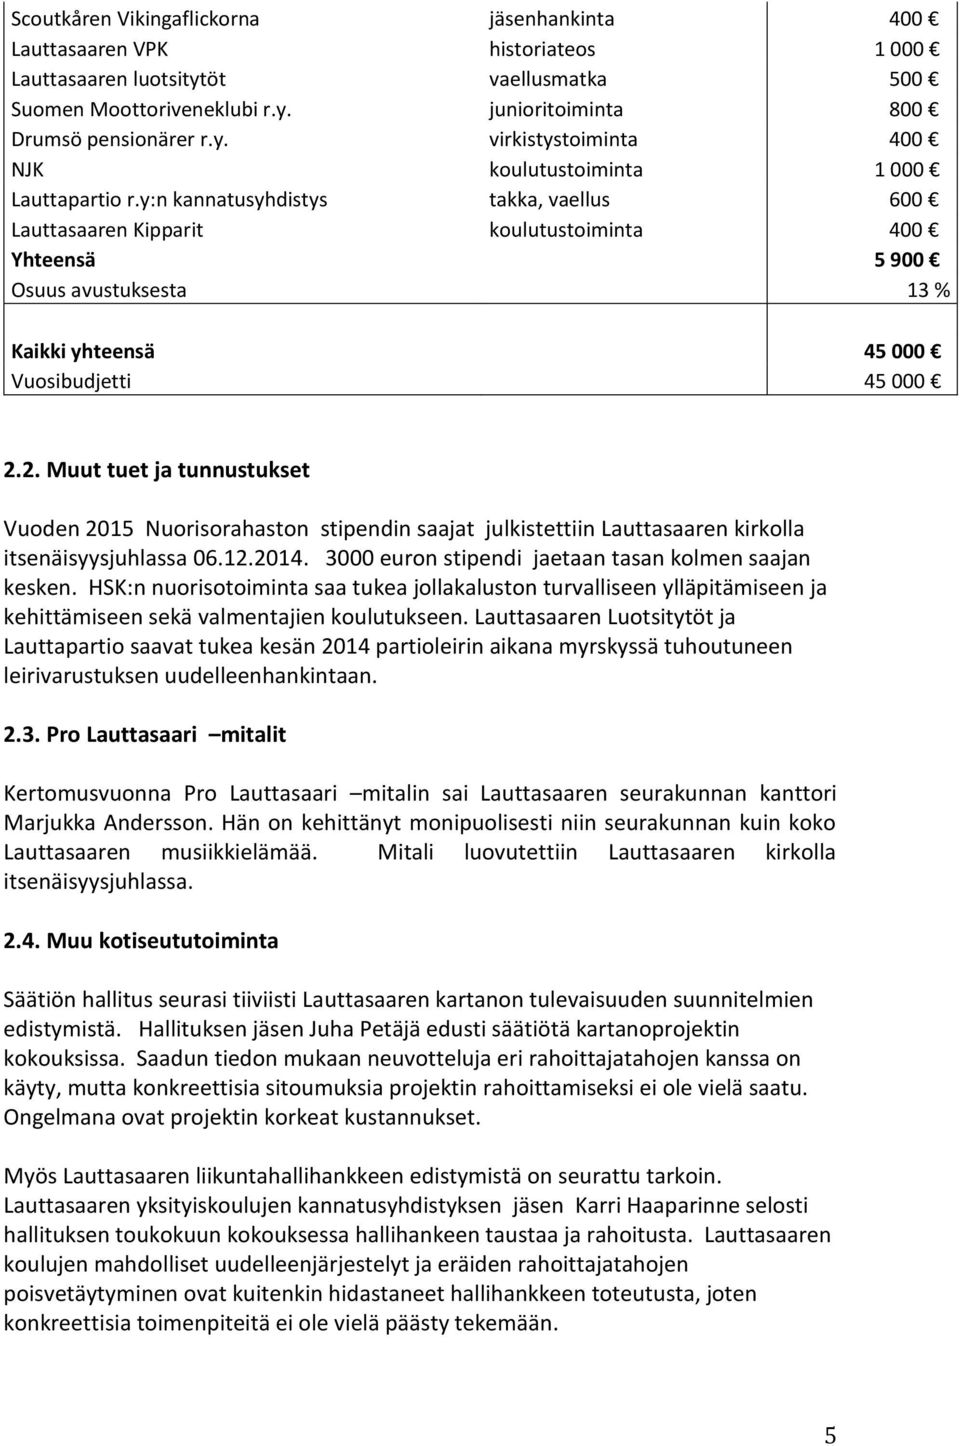 2. Muut tuet ja tunnustukset Vuoden 2015 Nuorisorahaston stipendin saajat julkistettiin Lauttasaaren kirkolla itsenäisyysjuhlassa 06.12.2014. 3000 euron stipendi jaetaan tasan kolmen saajan kesken.